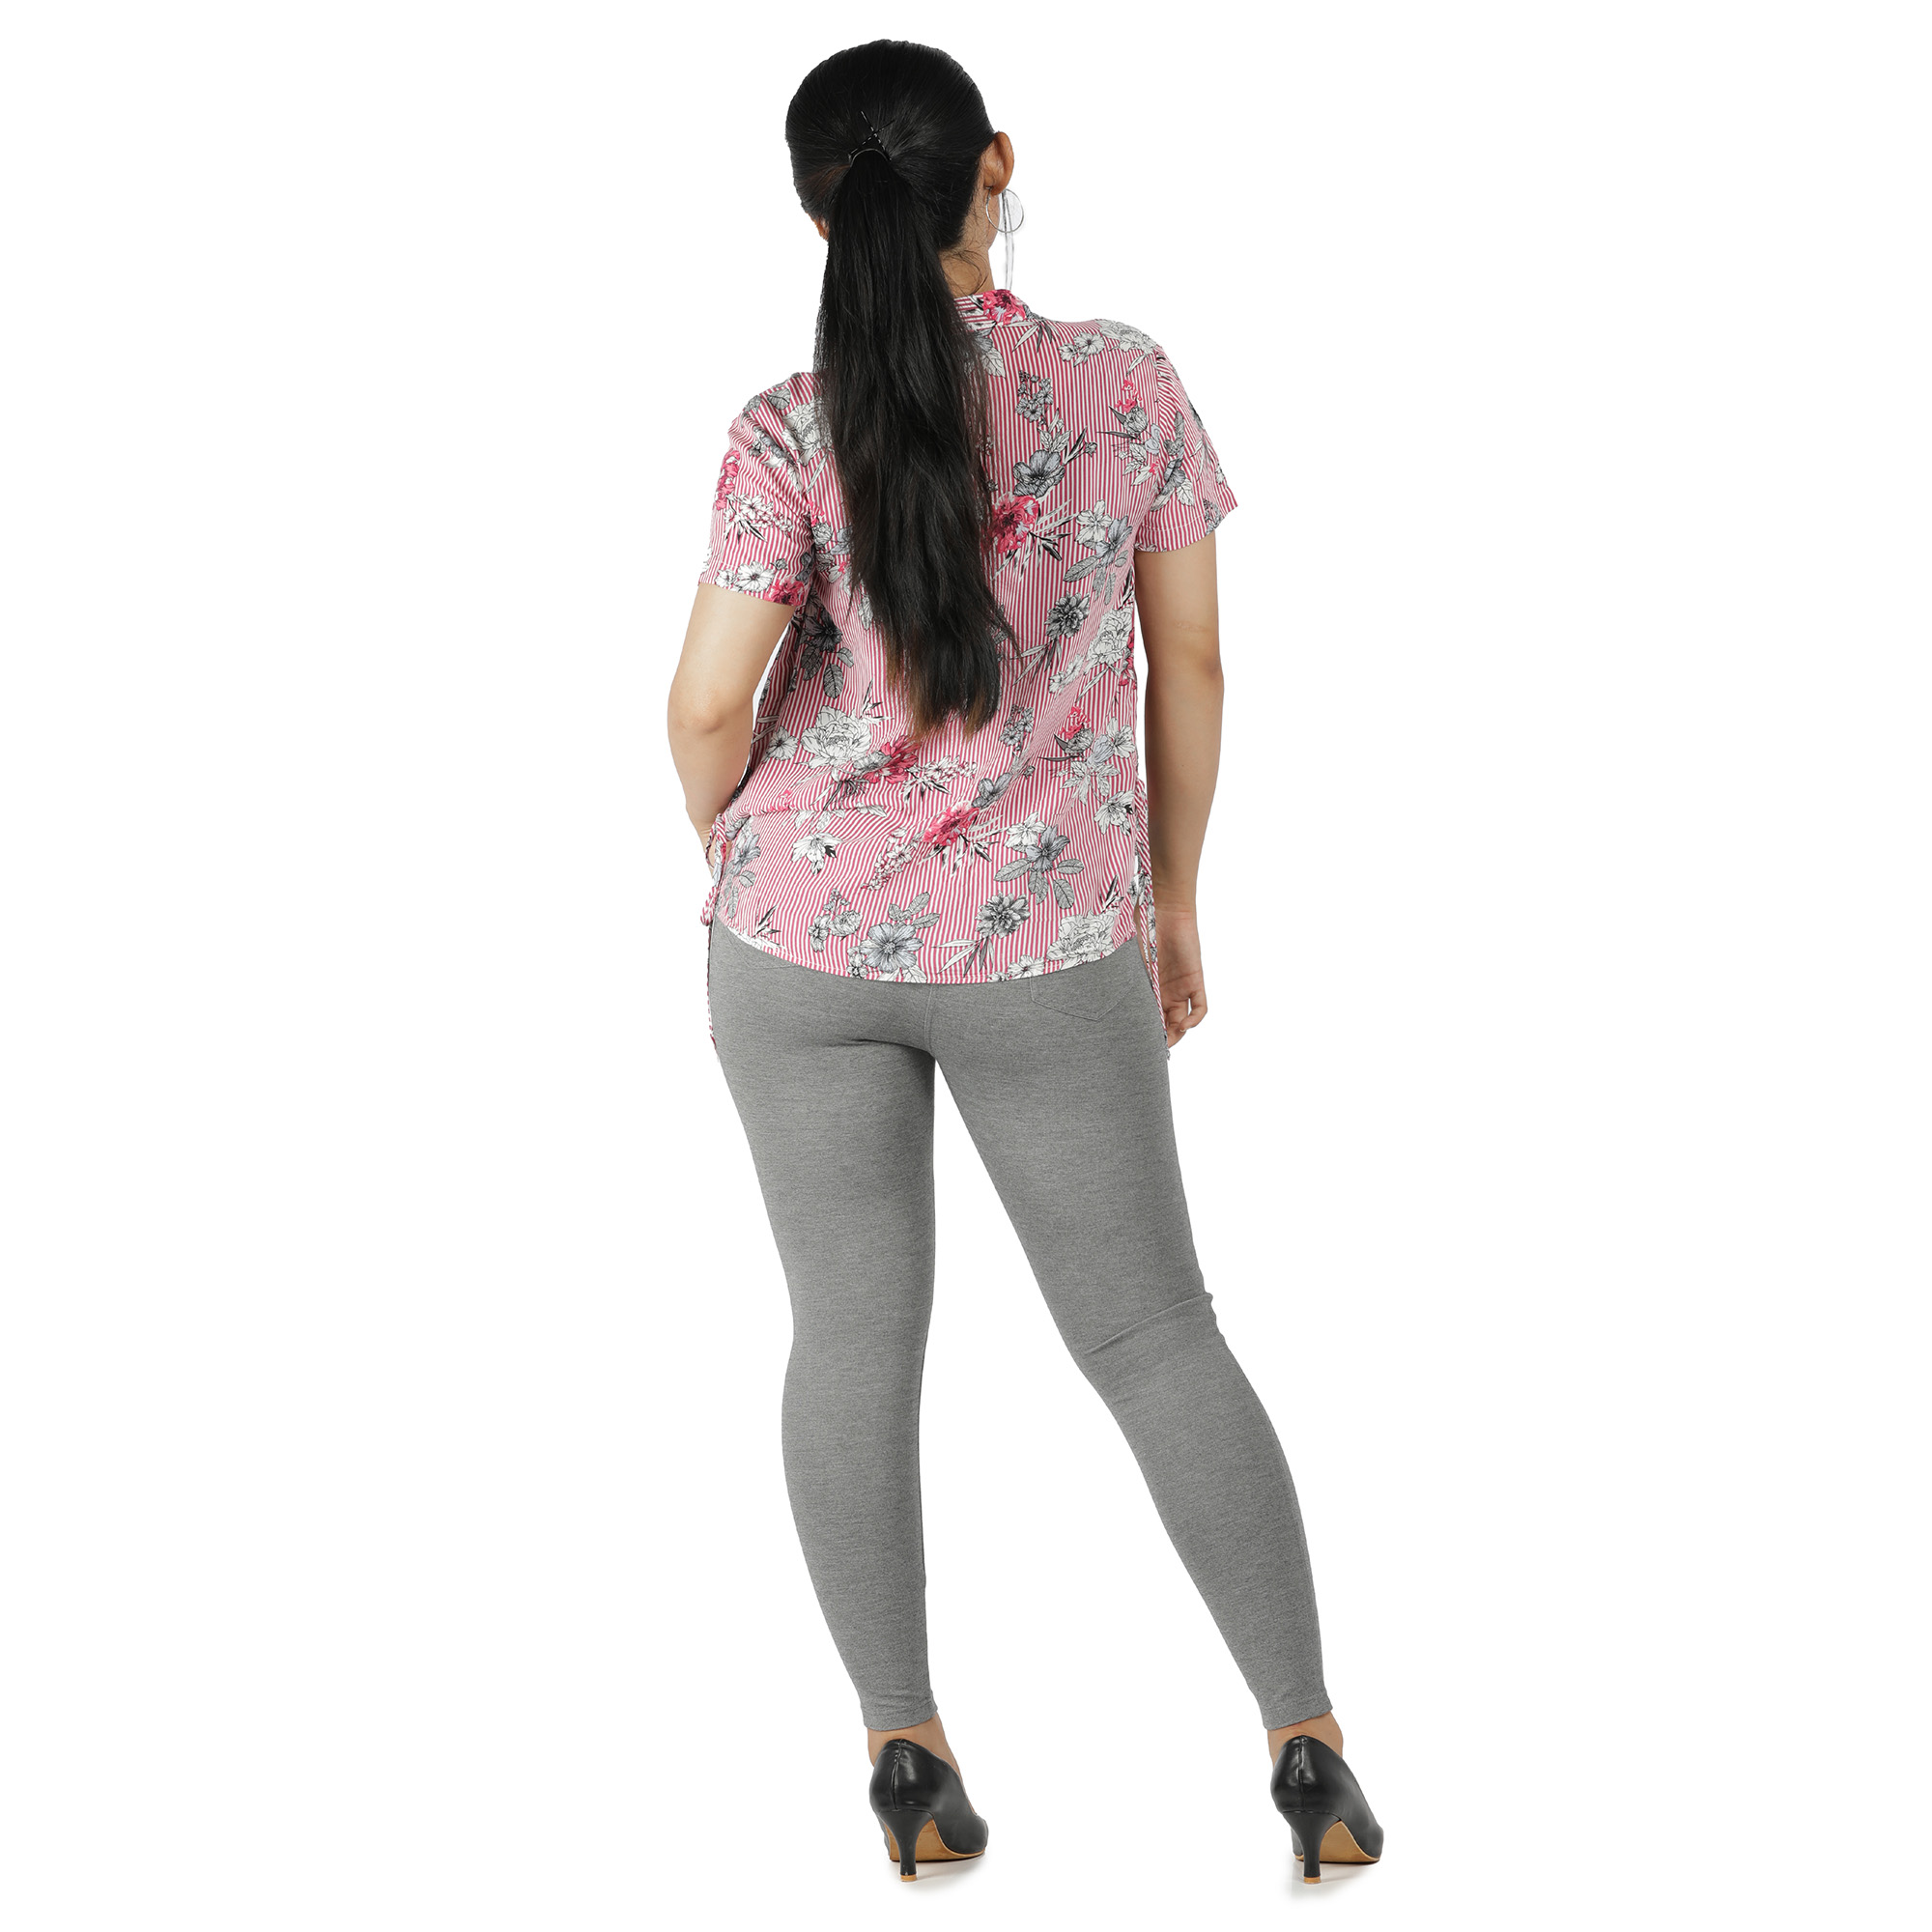 Grey jeggings for women Compression pant 2 back pockets - Belore Slims